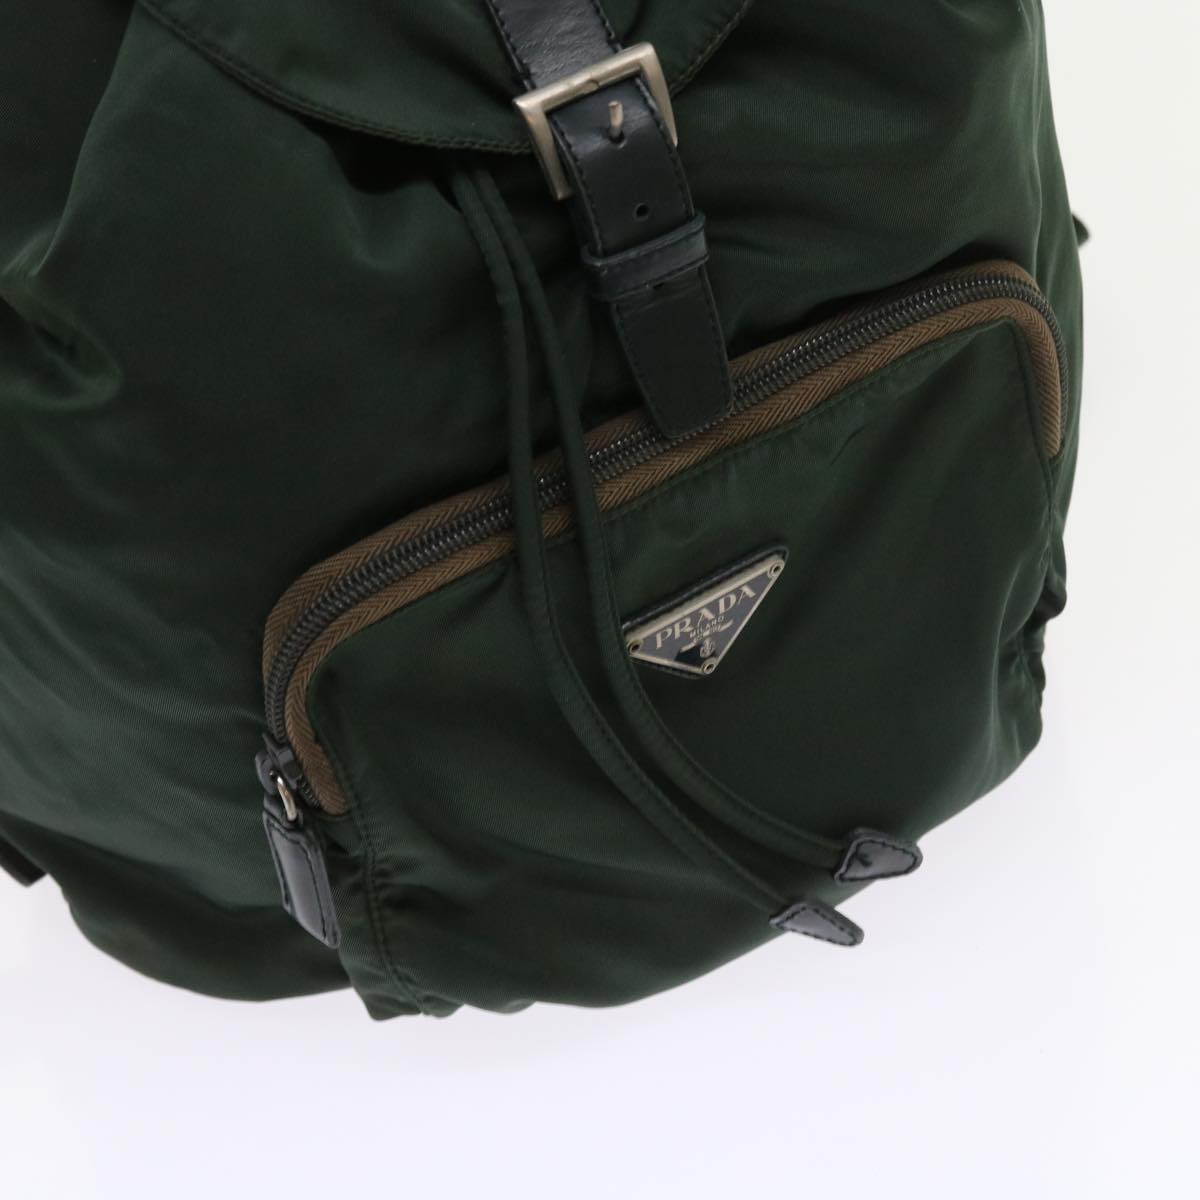 PRADA Backpack Nylon Green Auth bs9039